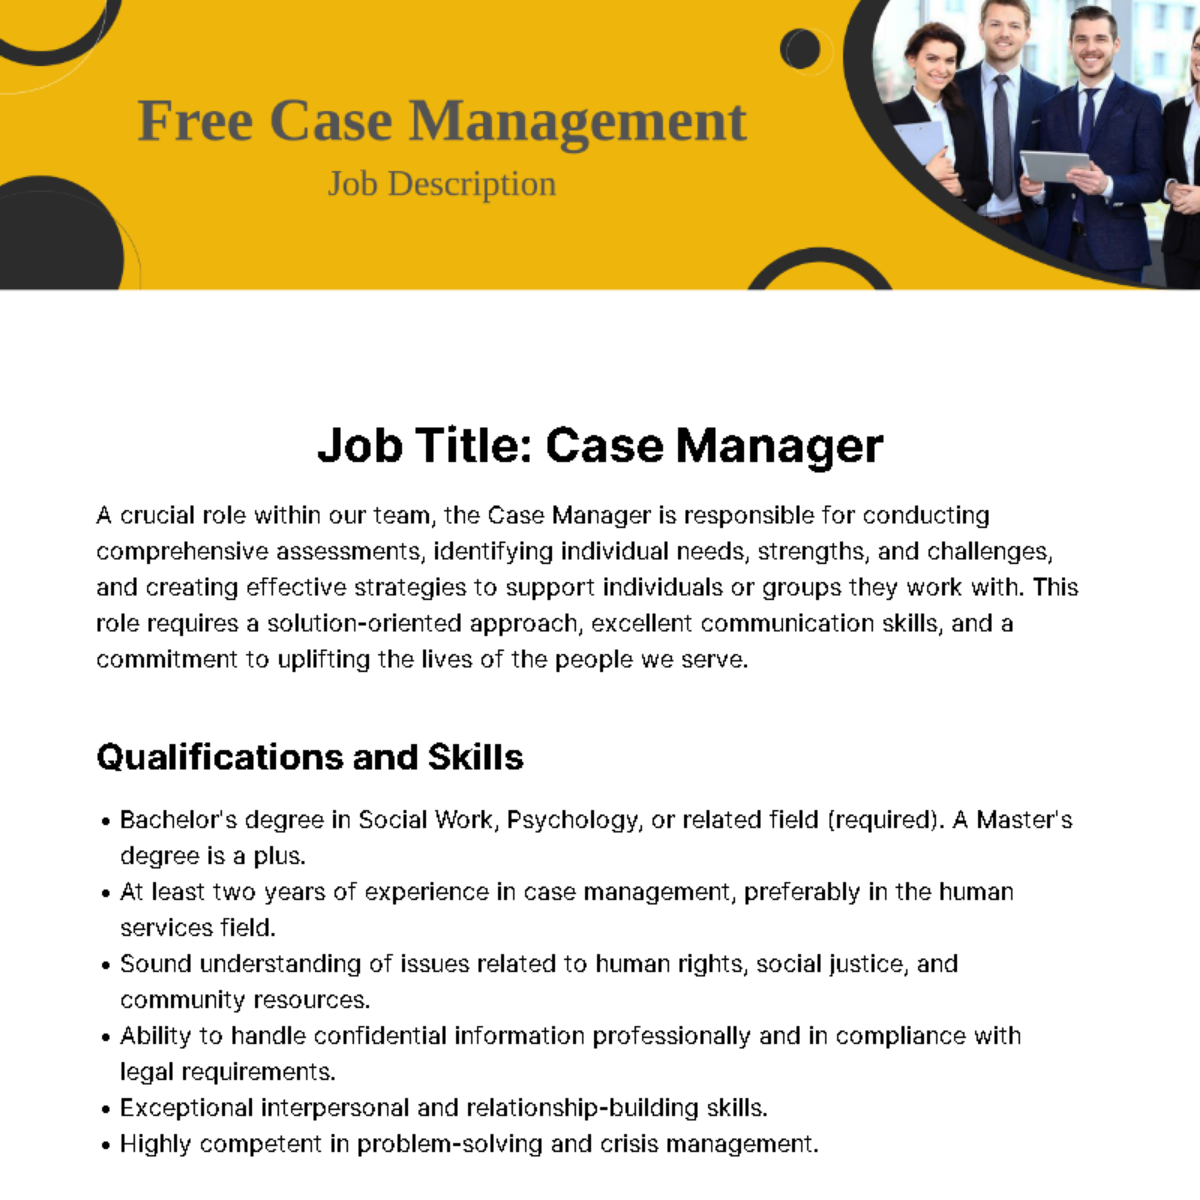 Free Case Management Job Description Template